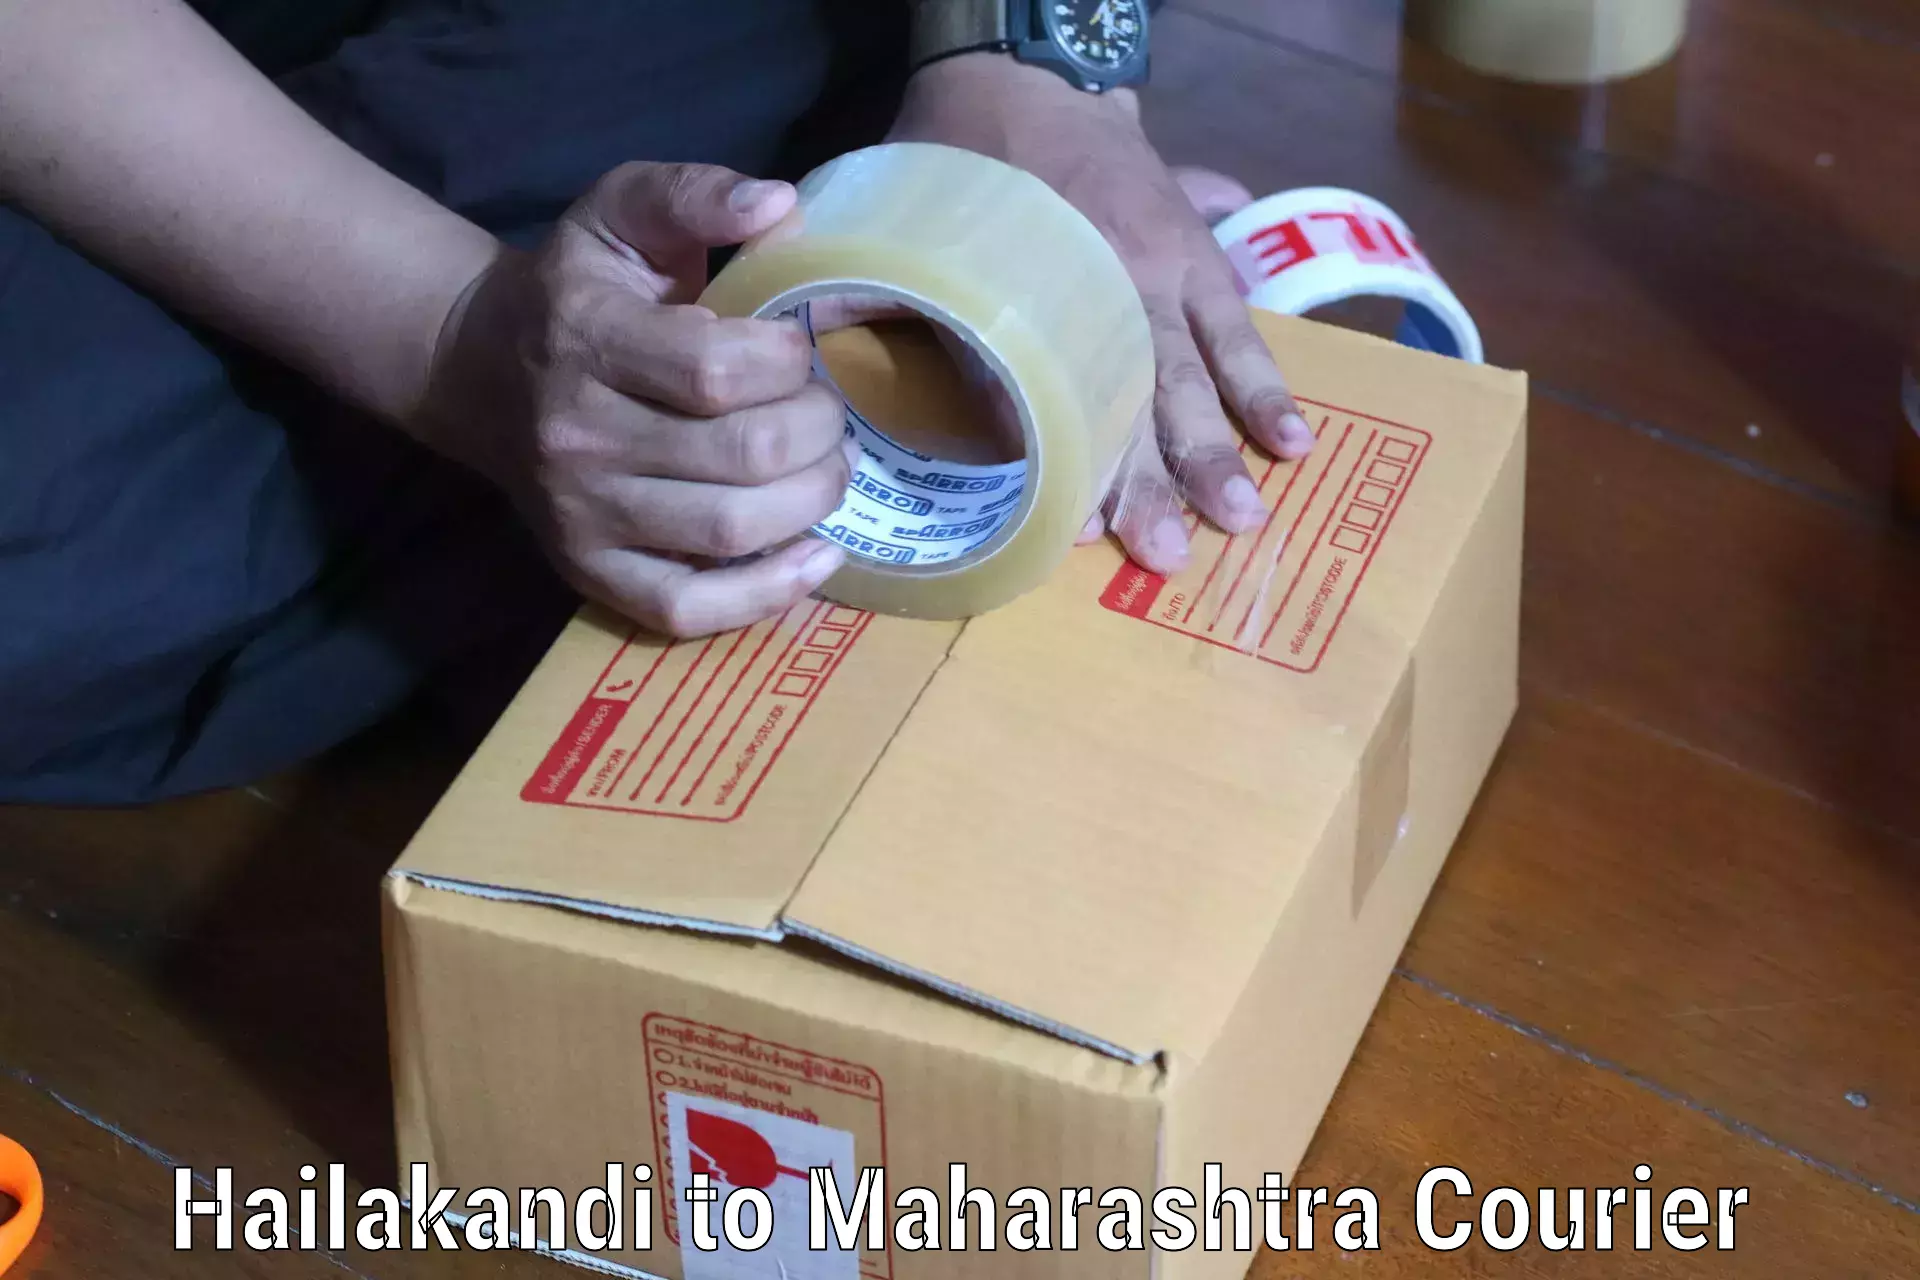 Overnight delivery services Hailakandi to Maharashtra